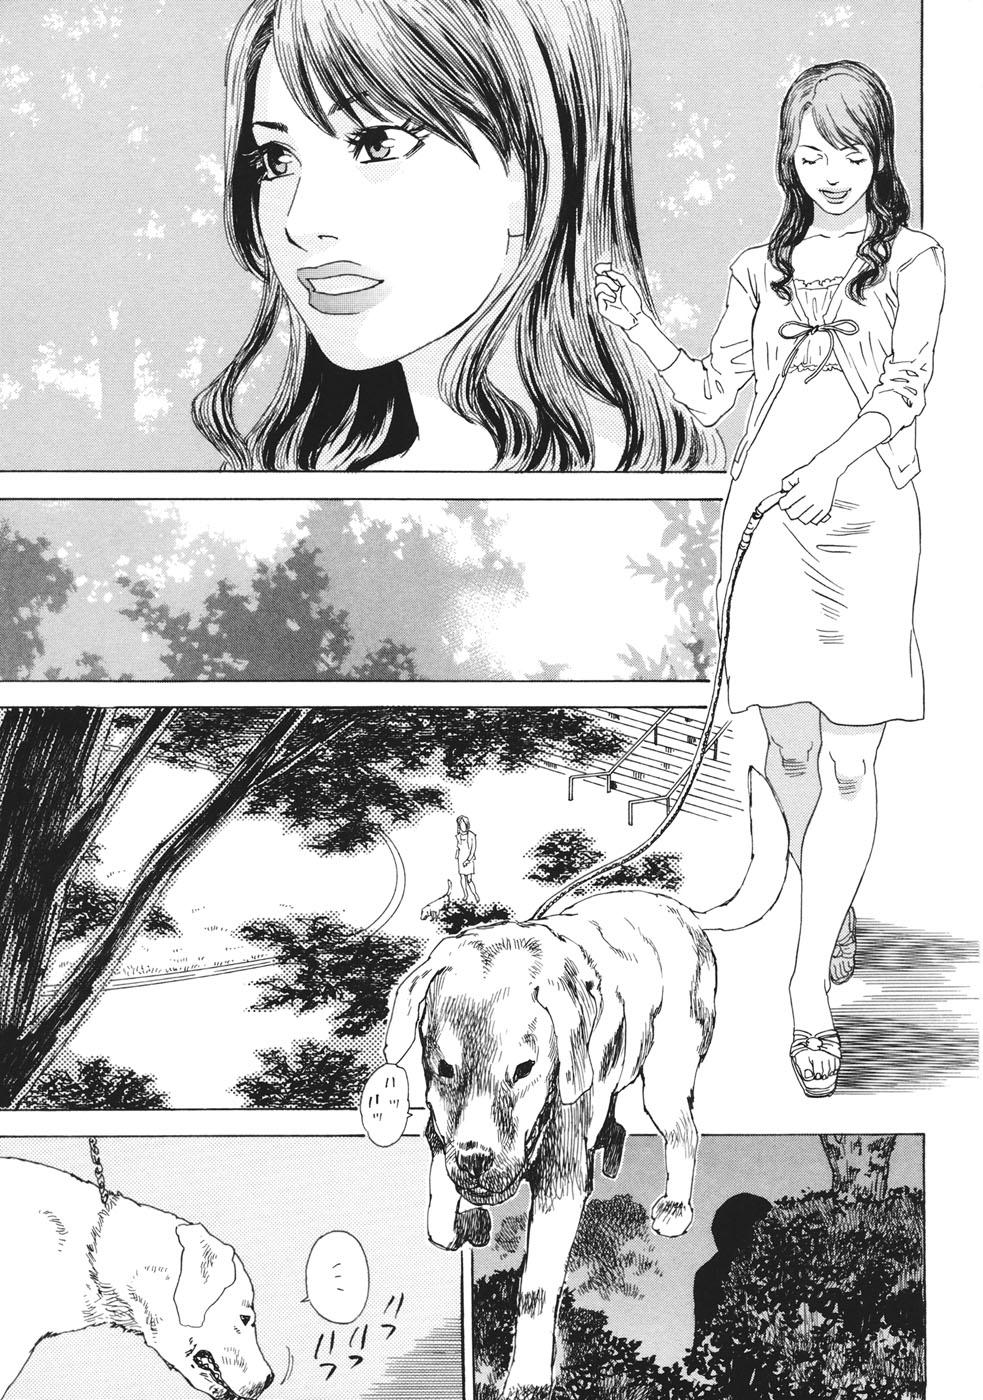 ...Moujhu - Bête Obscène Page 6 Of 214 hentai manga, Moujhu - Bête Obscène ...